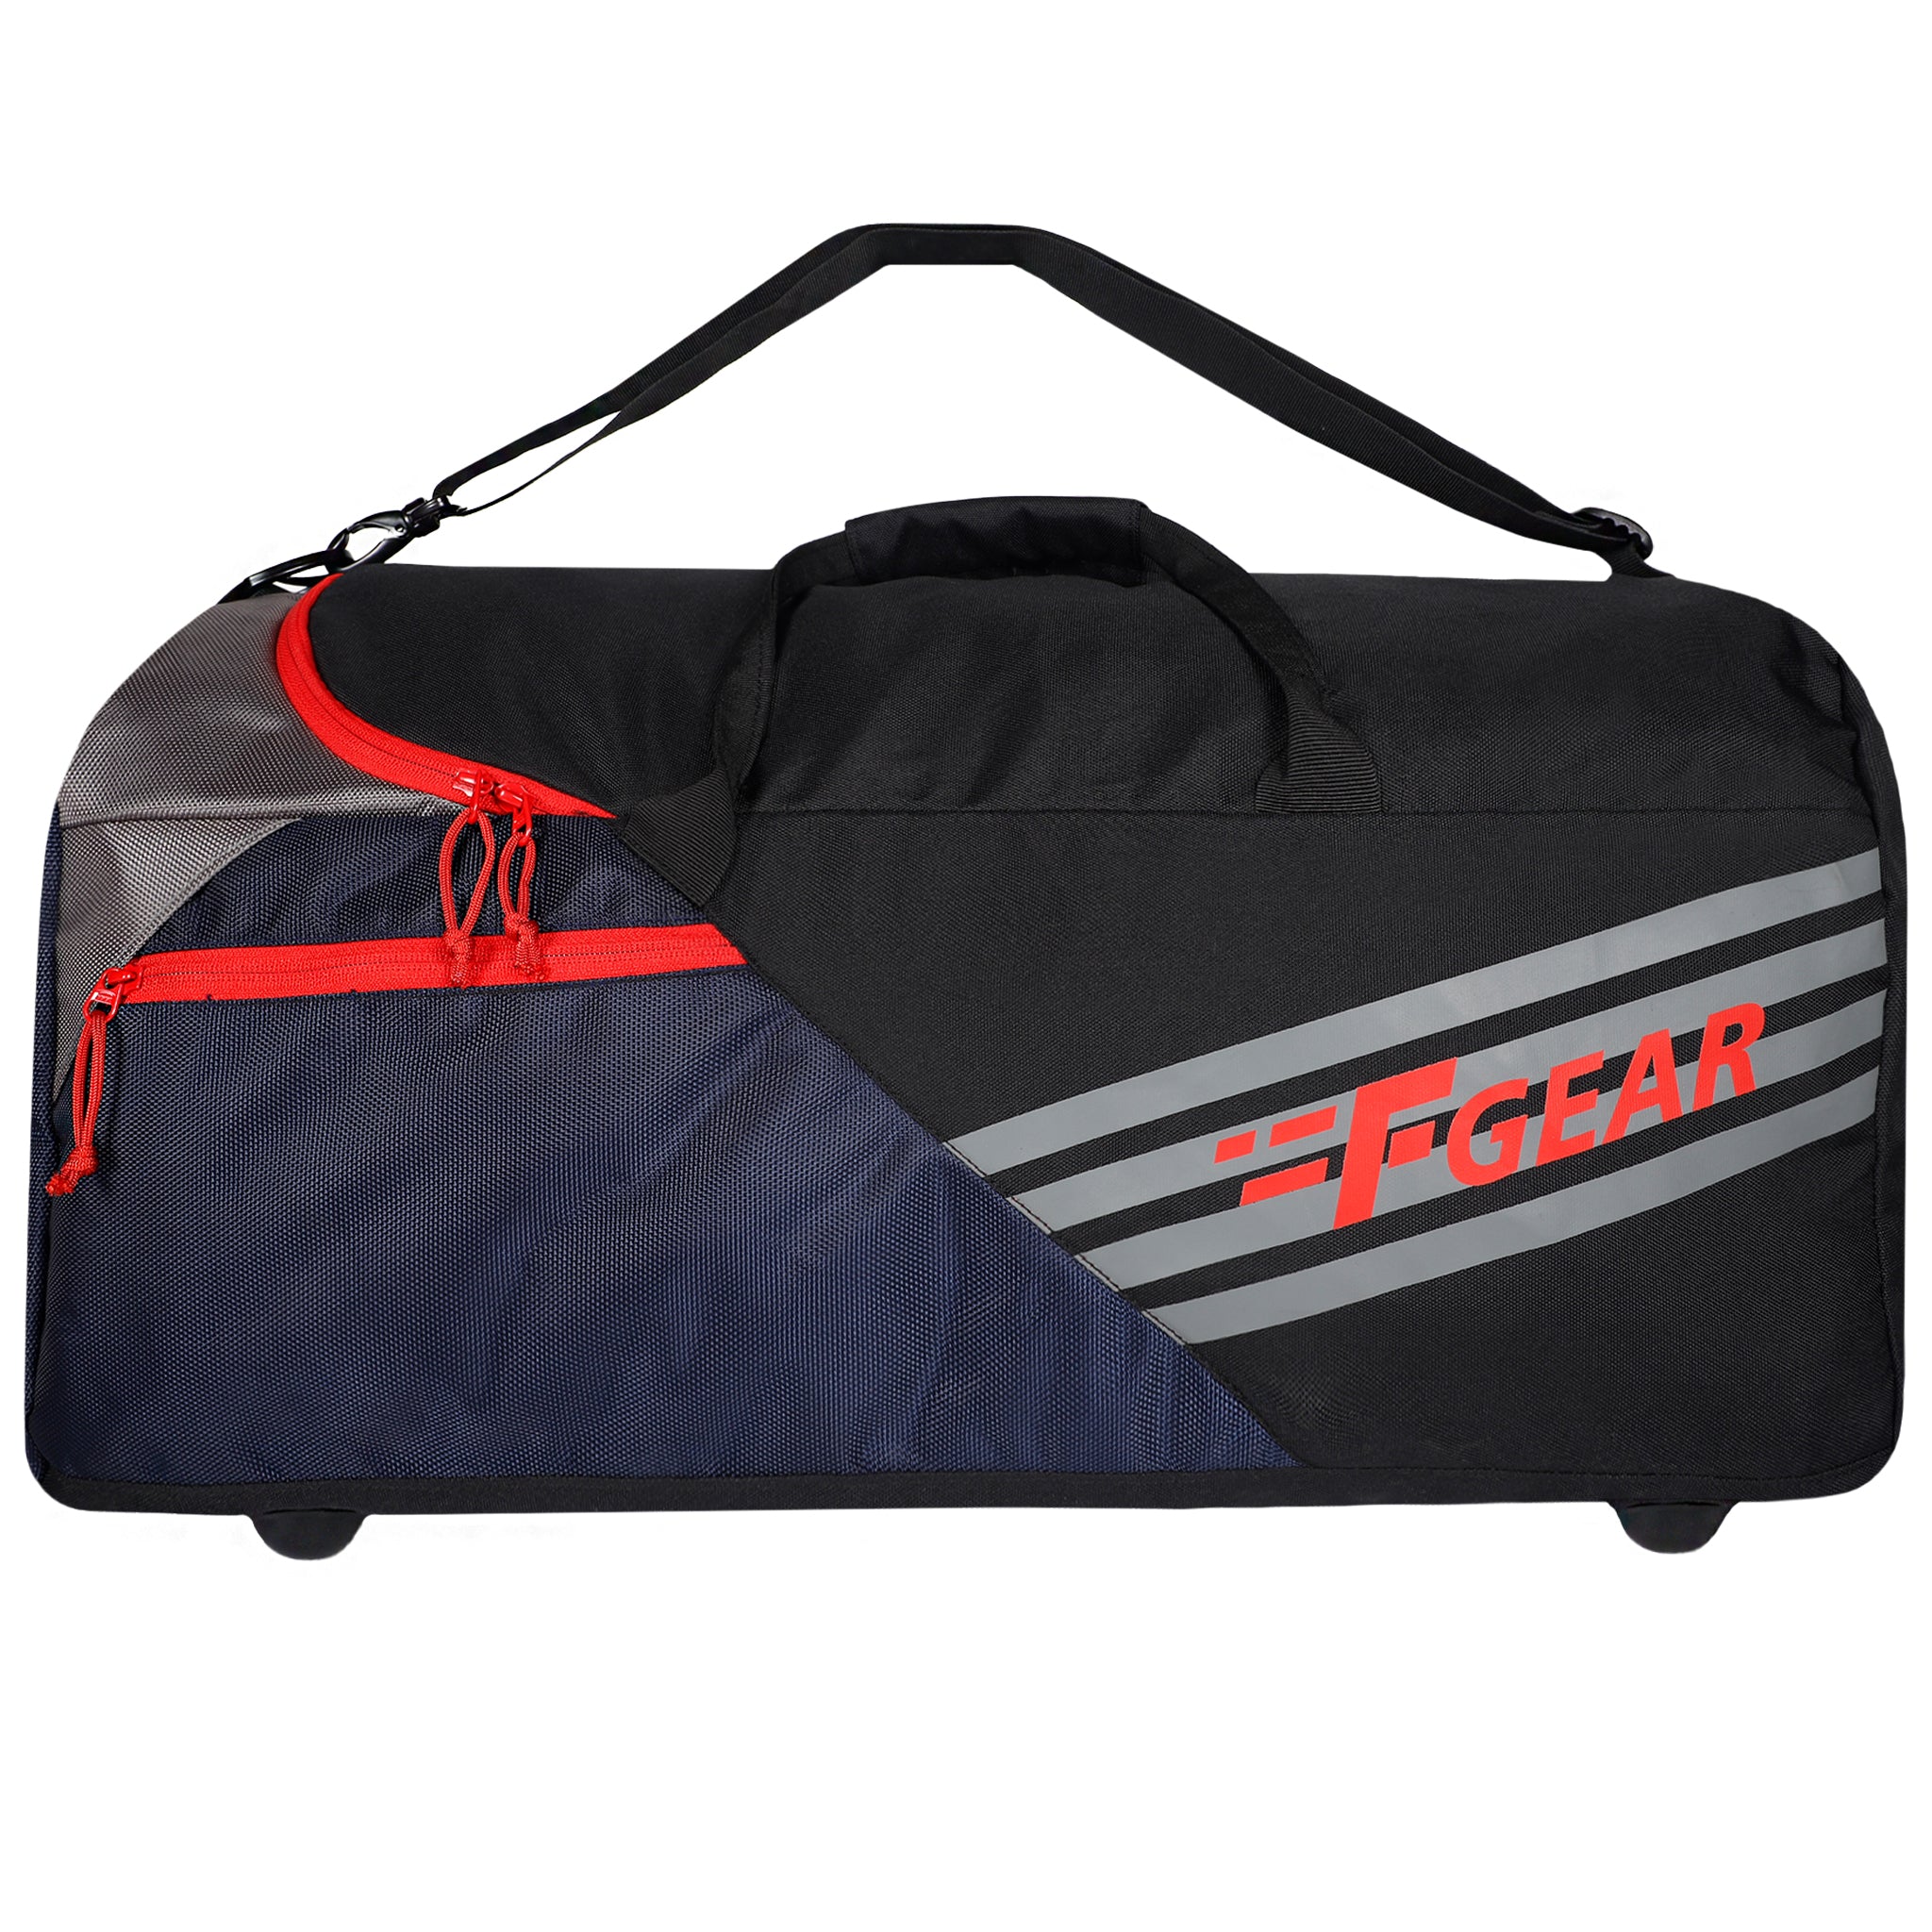 Buy Tote-A-Ton Duffle Bag for USD 41.99 | Samsonite US